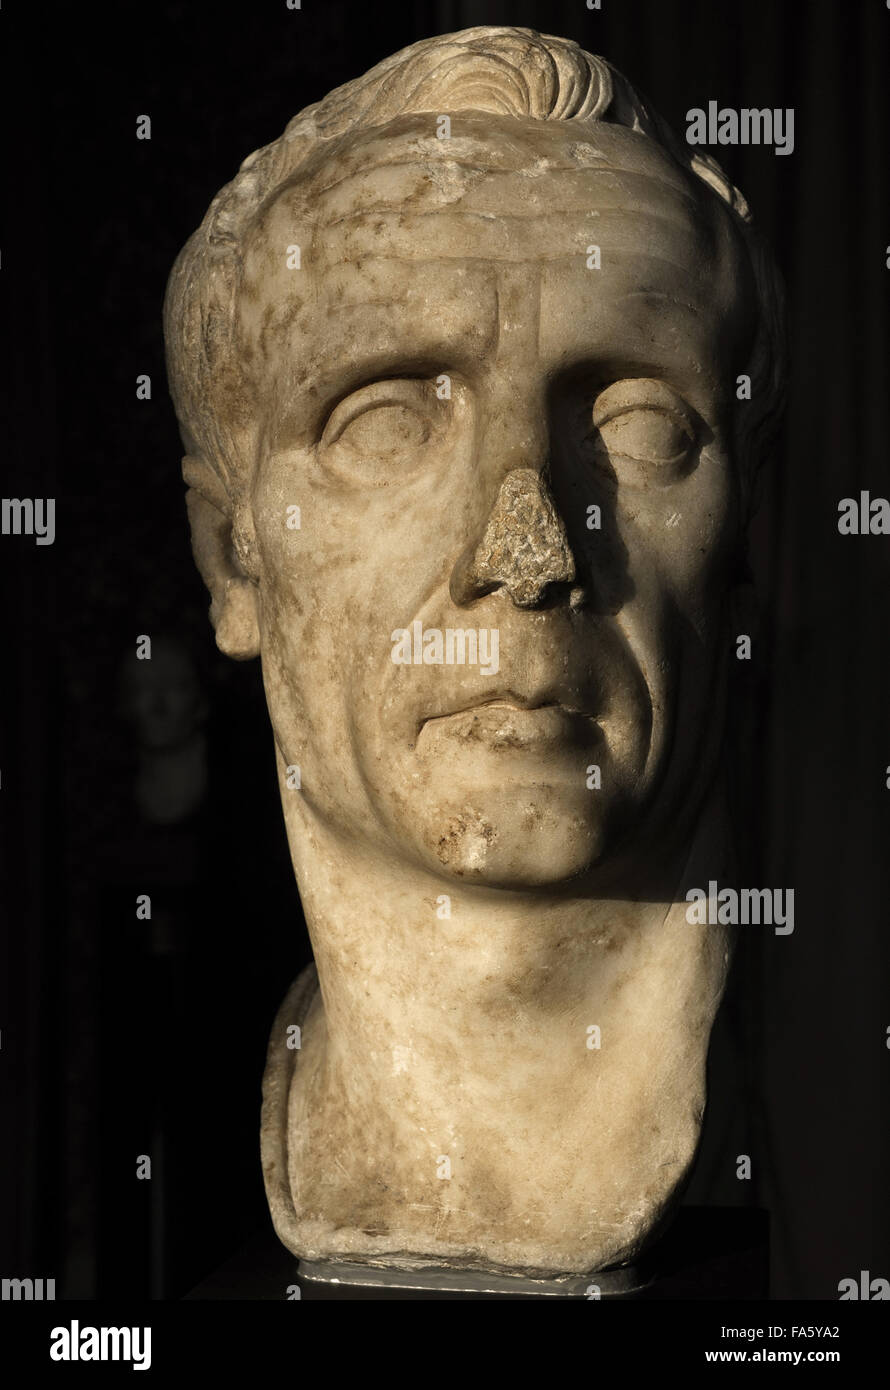 Busto identificado por algunos como Julius Caesar (102-100-44 BC), otros como dictador Sulla (138-78 a.C.). Quizás un desconocido era republicano romano. S. el siglo I DC. Mármol. Carlsberg Glyptotek Museum. Copenhague. Dinamarca. Foto de stock